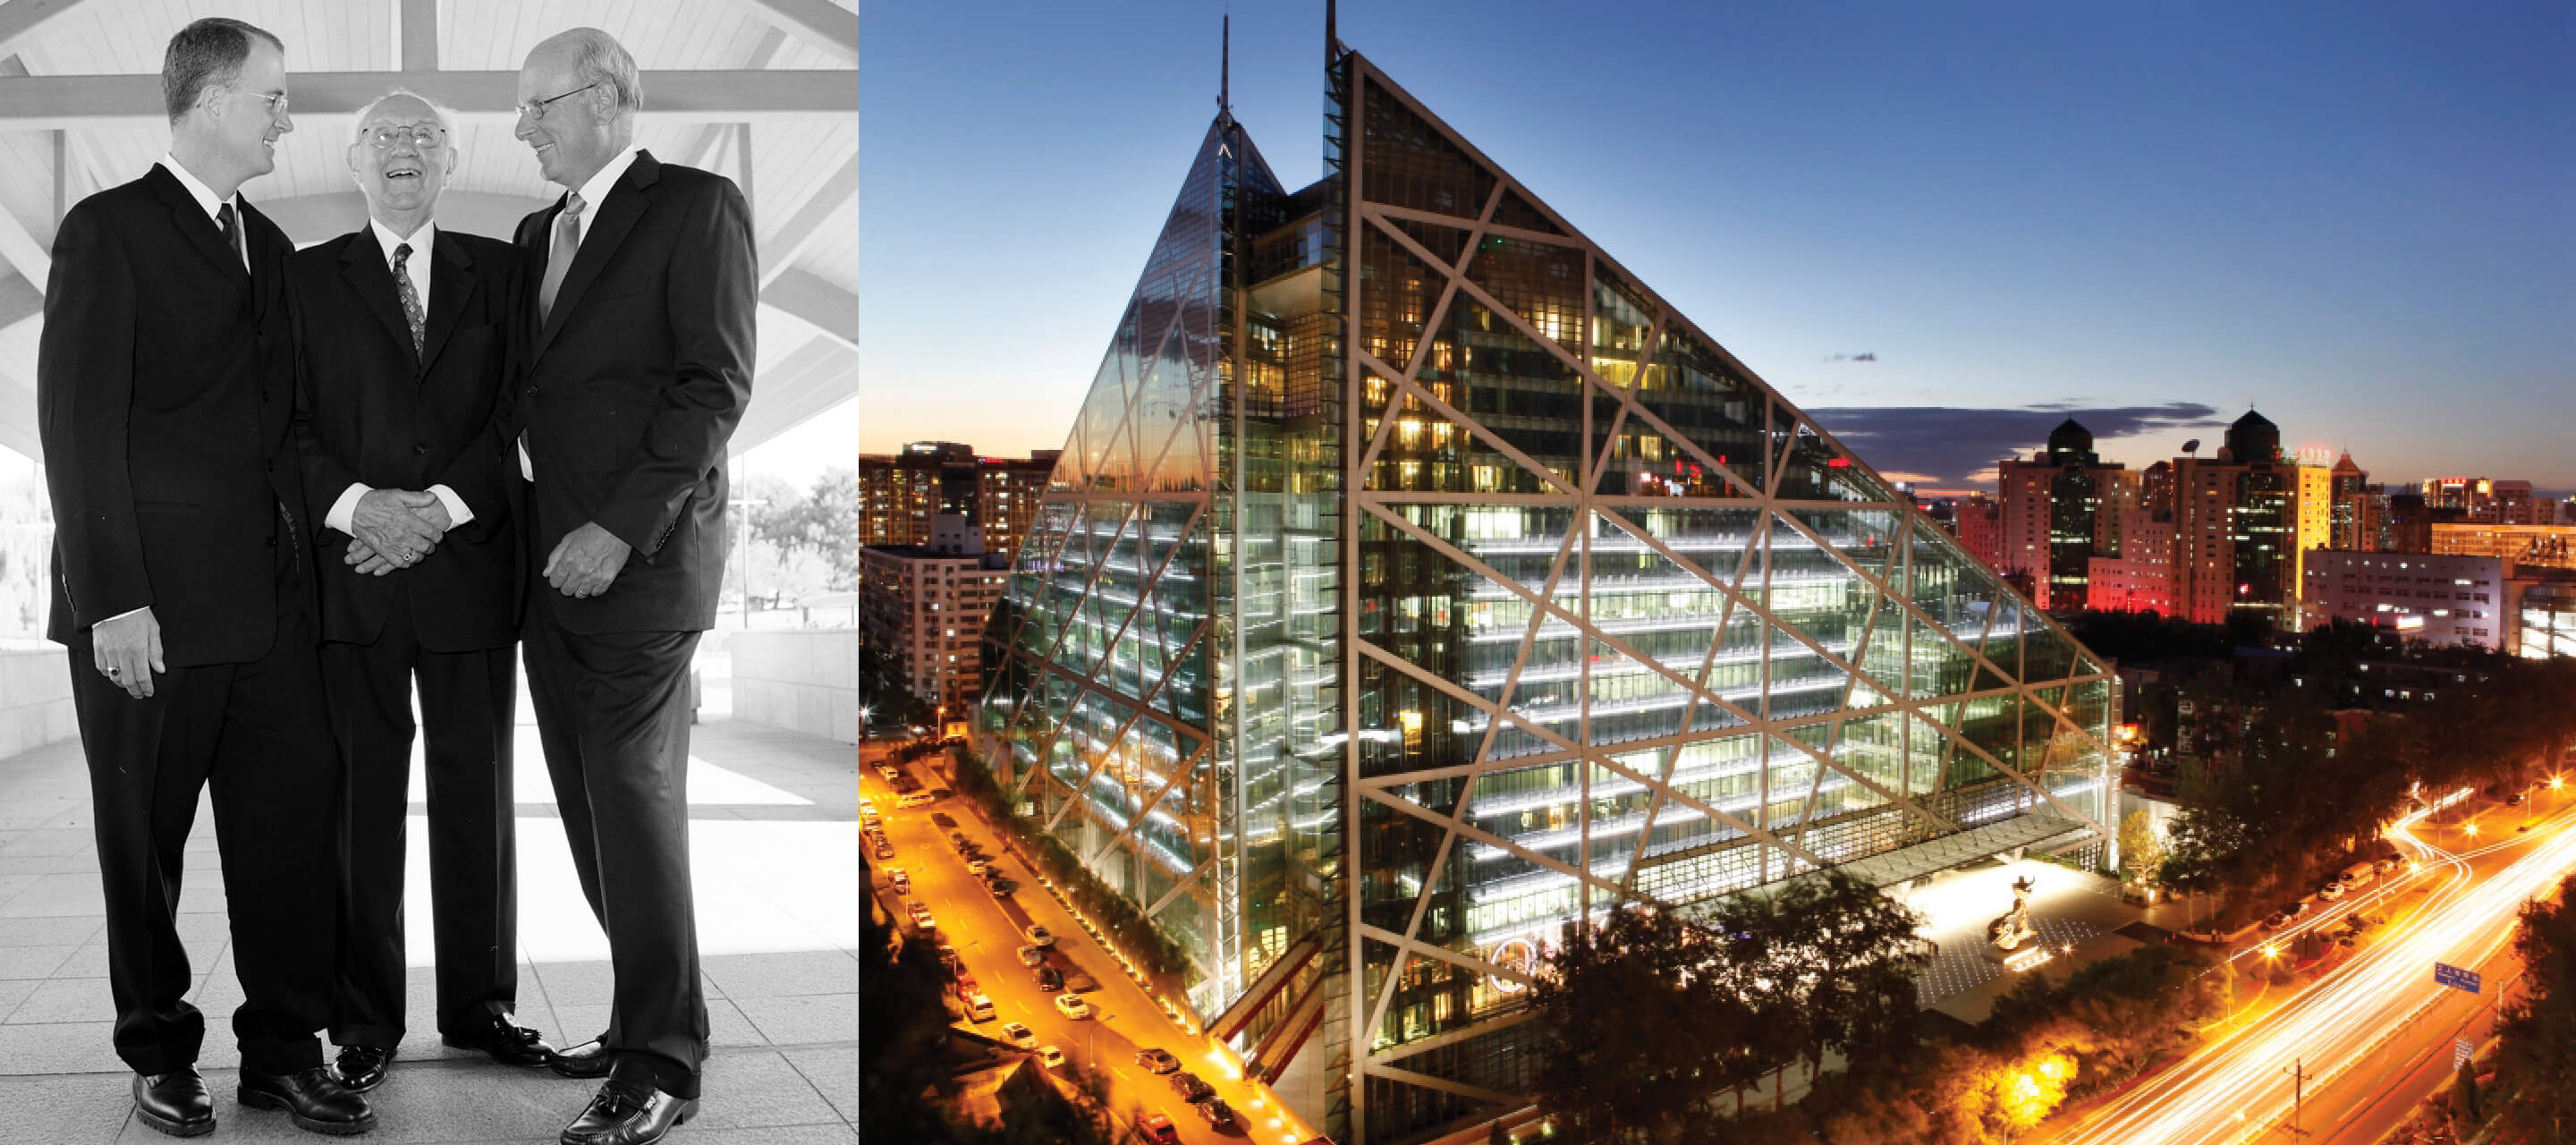 90er Jahre – ​Matthew Haworth tritt dem Team offiziell als Vertriebspartner bei, sodass die Familie bereits in der dritten Generation im Unternehmen vertreten ist. 1992 wird Haworth der erste Büromöbelhersteller, der nach ISO 9001 zertifiziert ist. Die Fertigung wird durch die Produktion in Shanghai, China, ausgebaut.